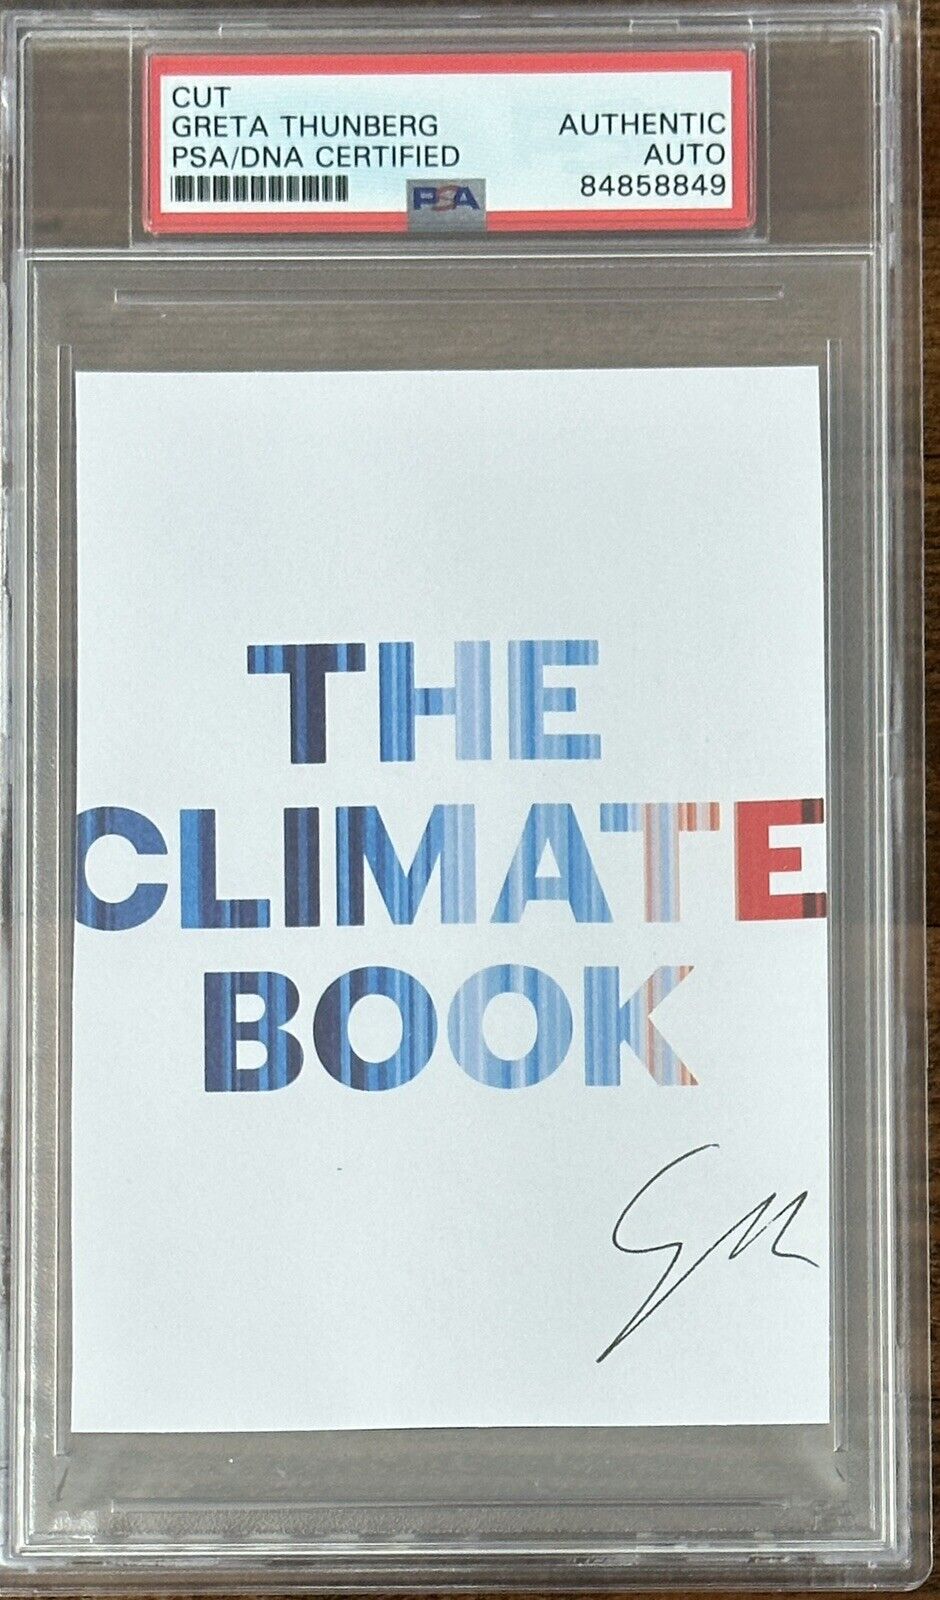 Greta Thunberg The Climate Book Signed Cut Signature PSA DNA COA Autograph